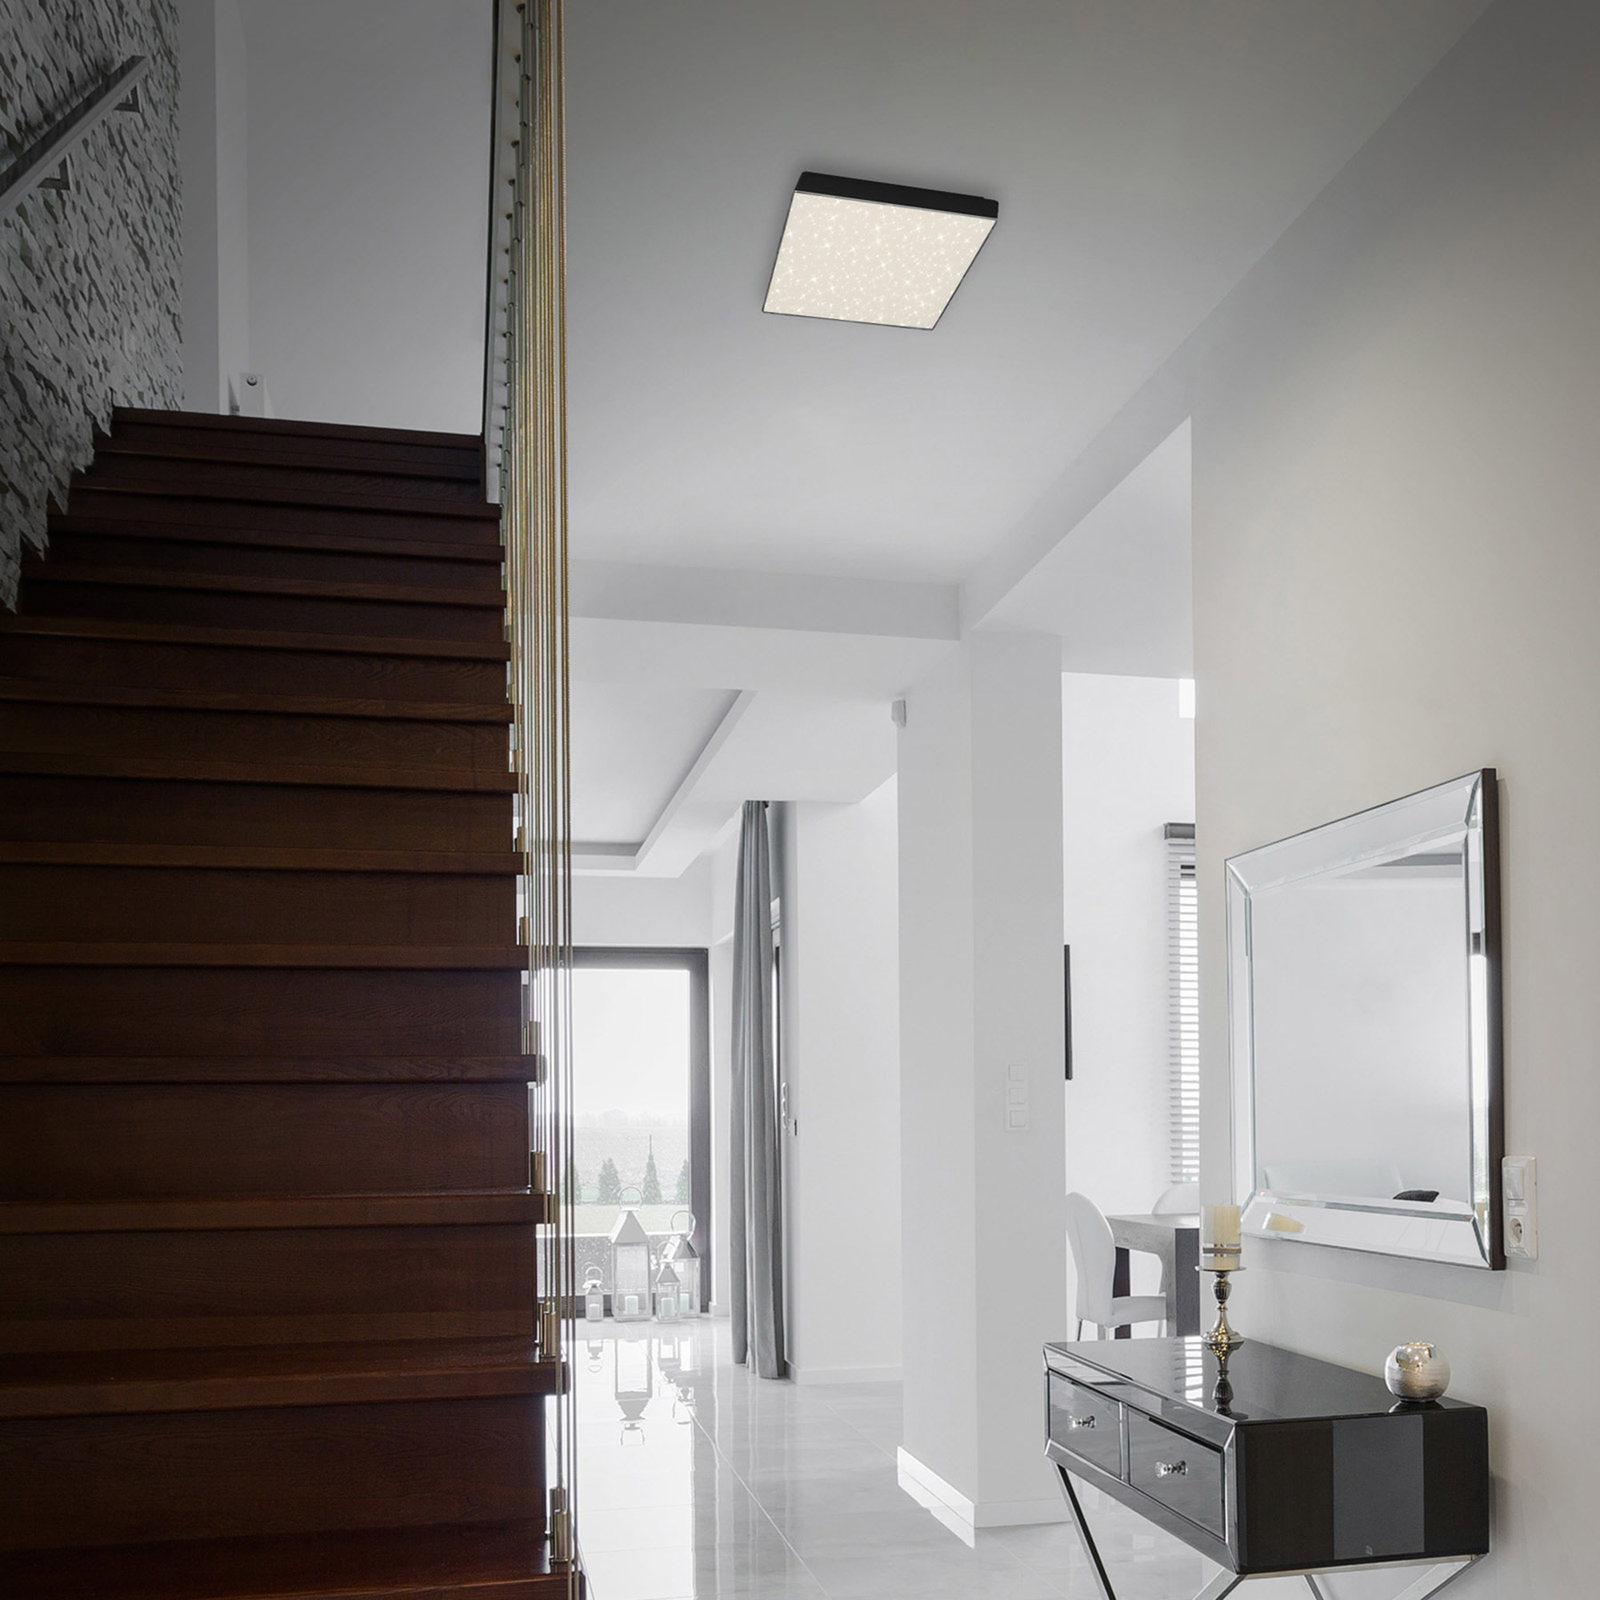 Φωτιστικό οροφής LED Flame Star, 21,2 x 21,2 cm μαύρο